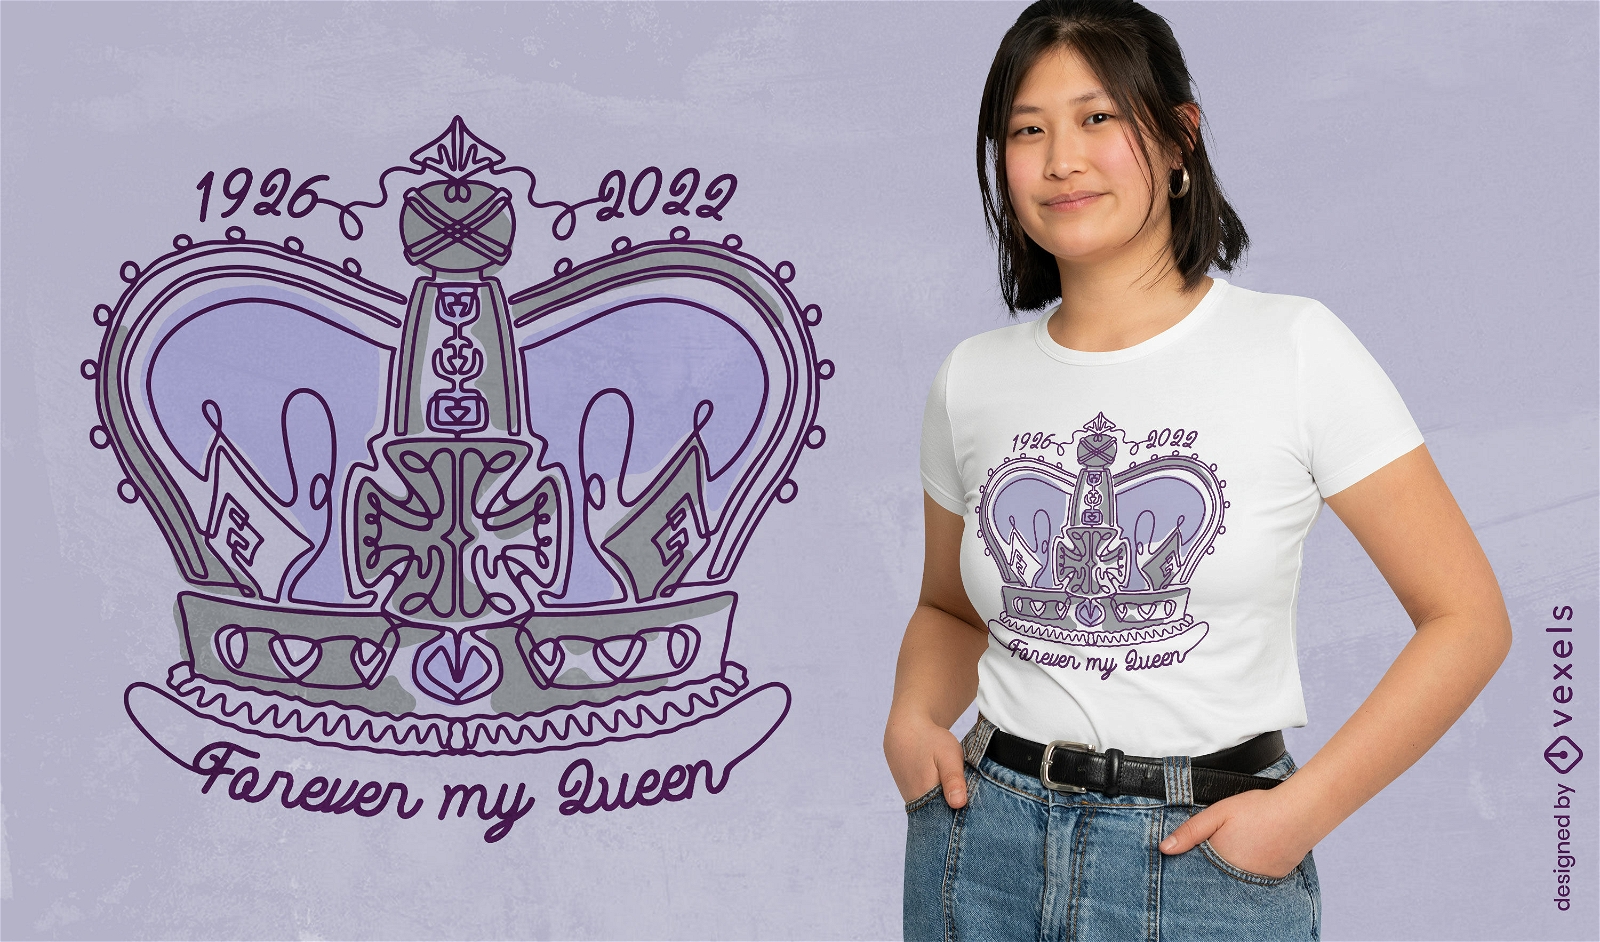 Design de t-shirt de coroa elegante brit?nica rainha